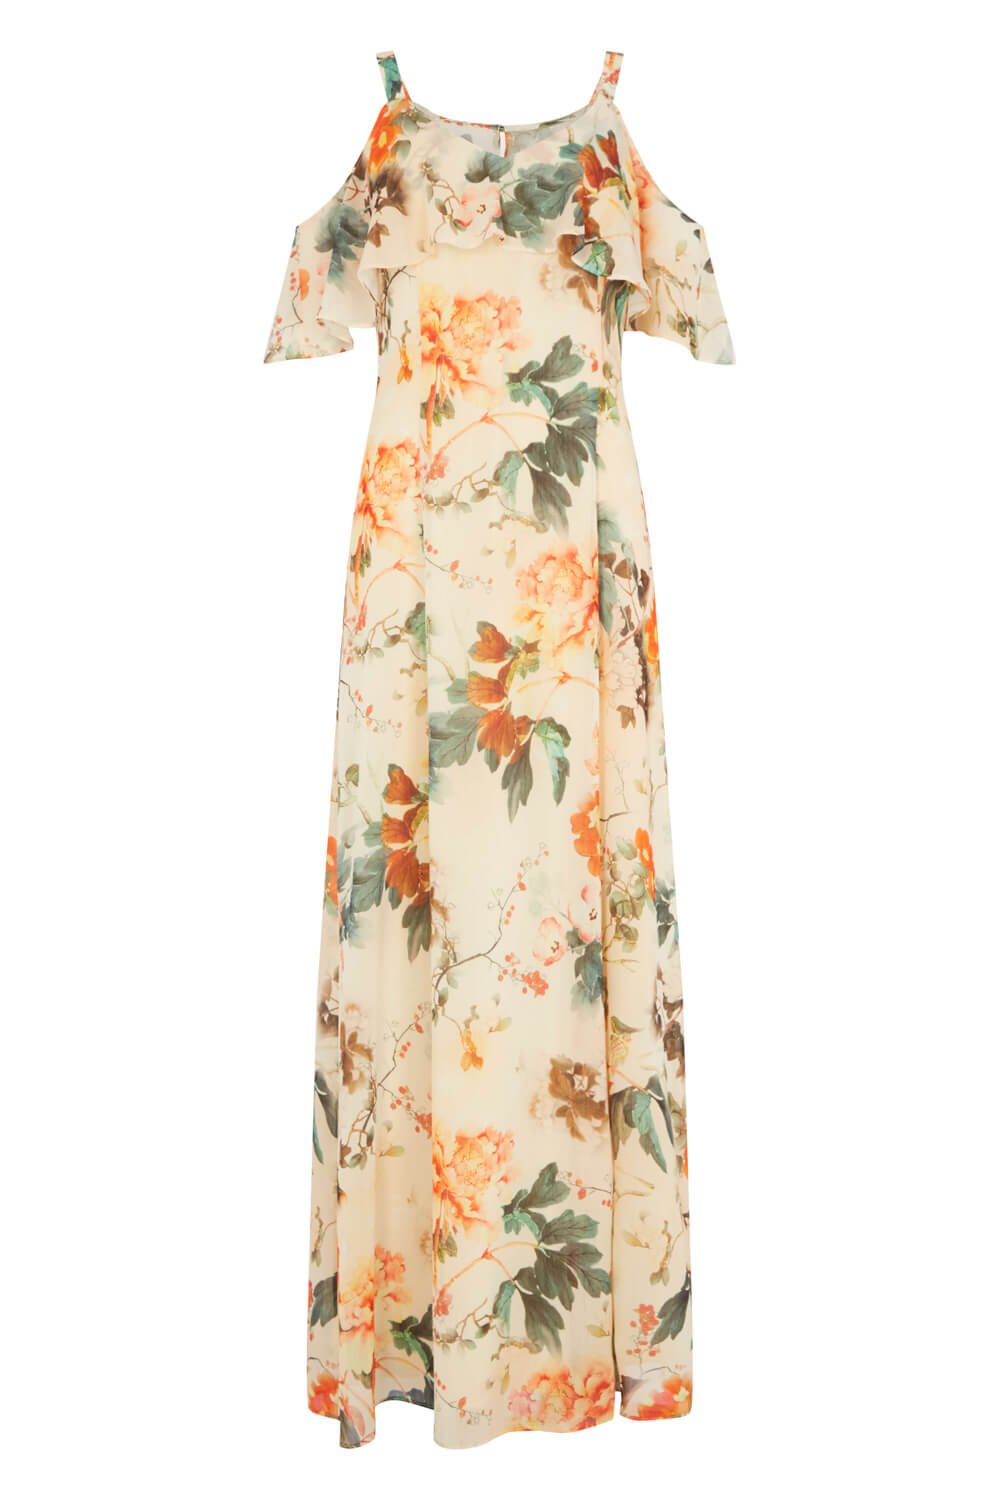 ORANGE Floral Cold Shoulder Chiffon Maxi Dress, Image 4 of 4